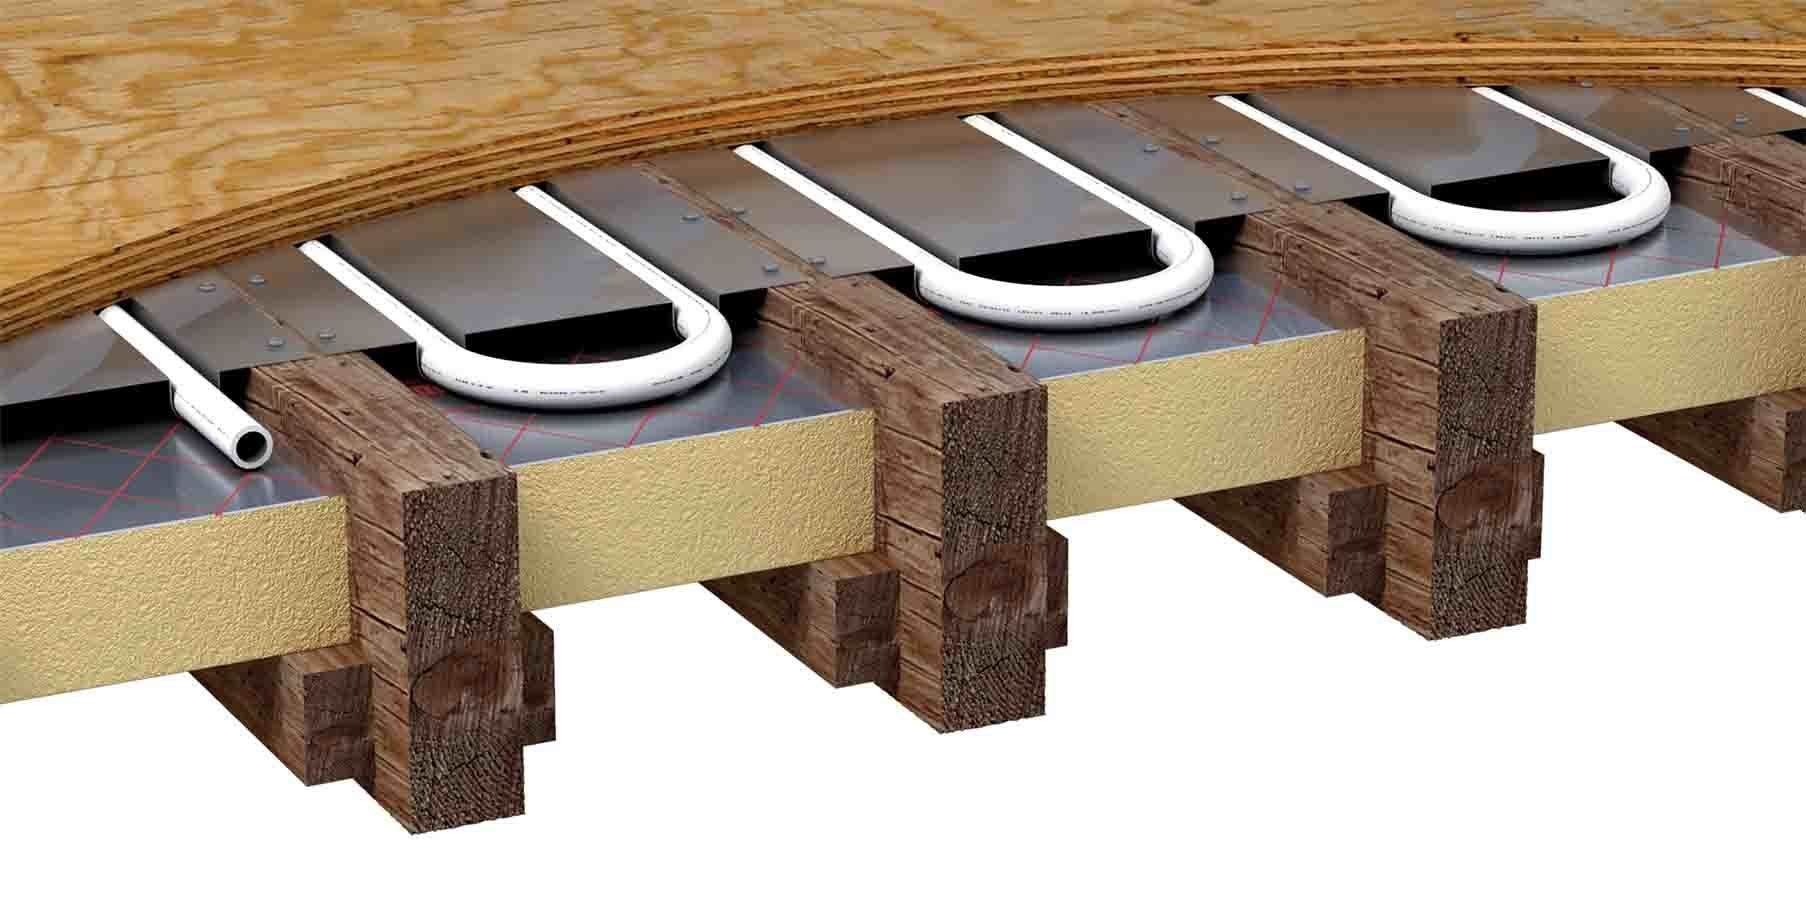 Soundproofing with underfloor heating